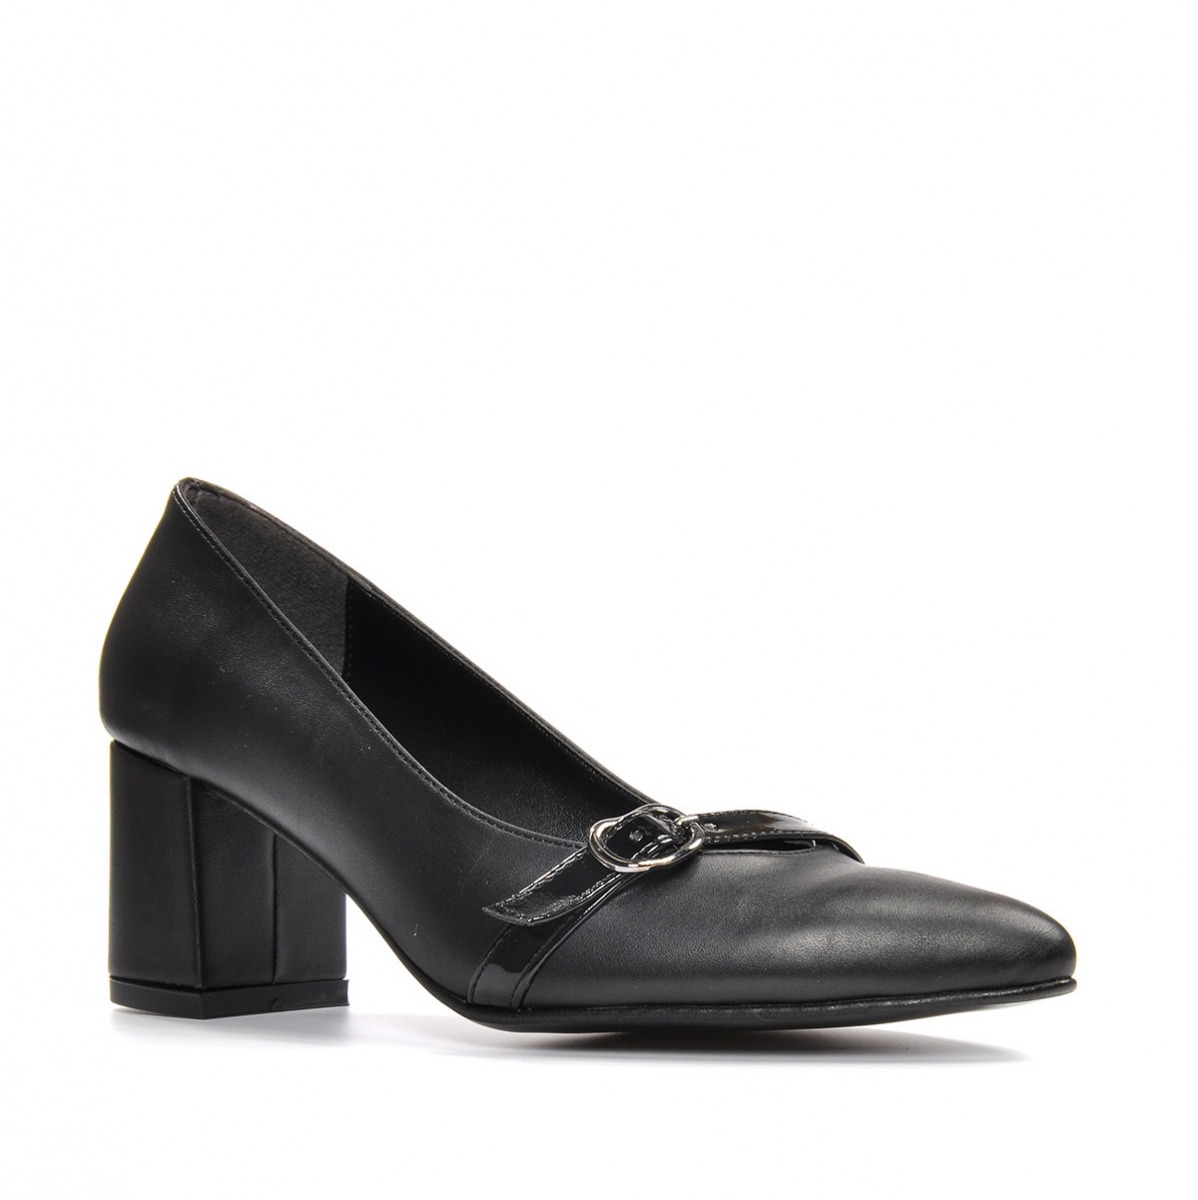 Flo Kadın  Siyah-Cilt Klasik Topuklu Ayakkabı VZN19-110K. 6